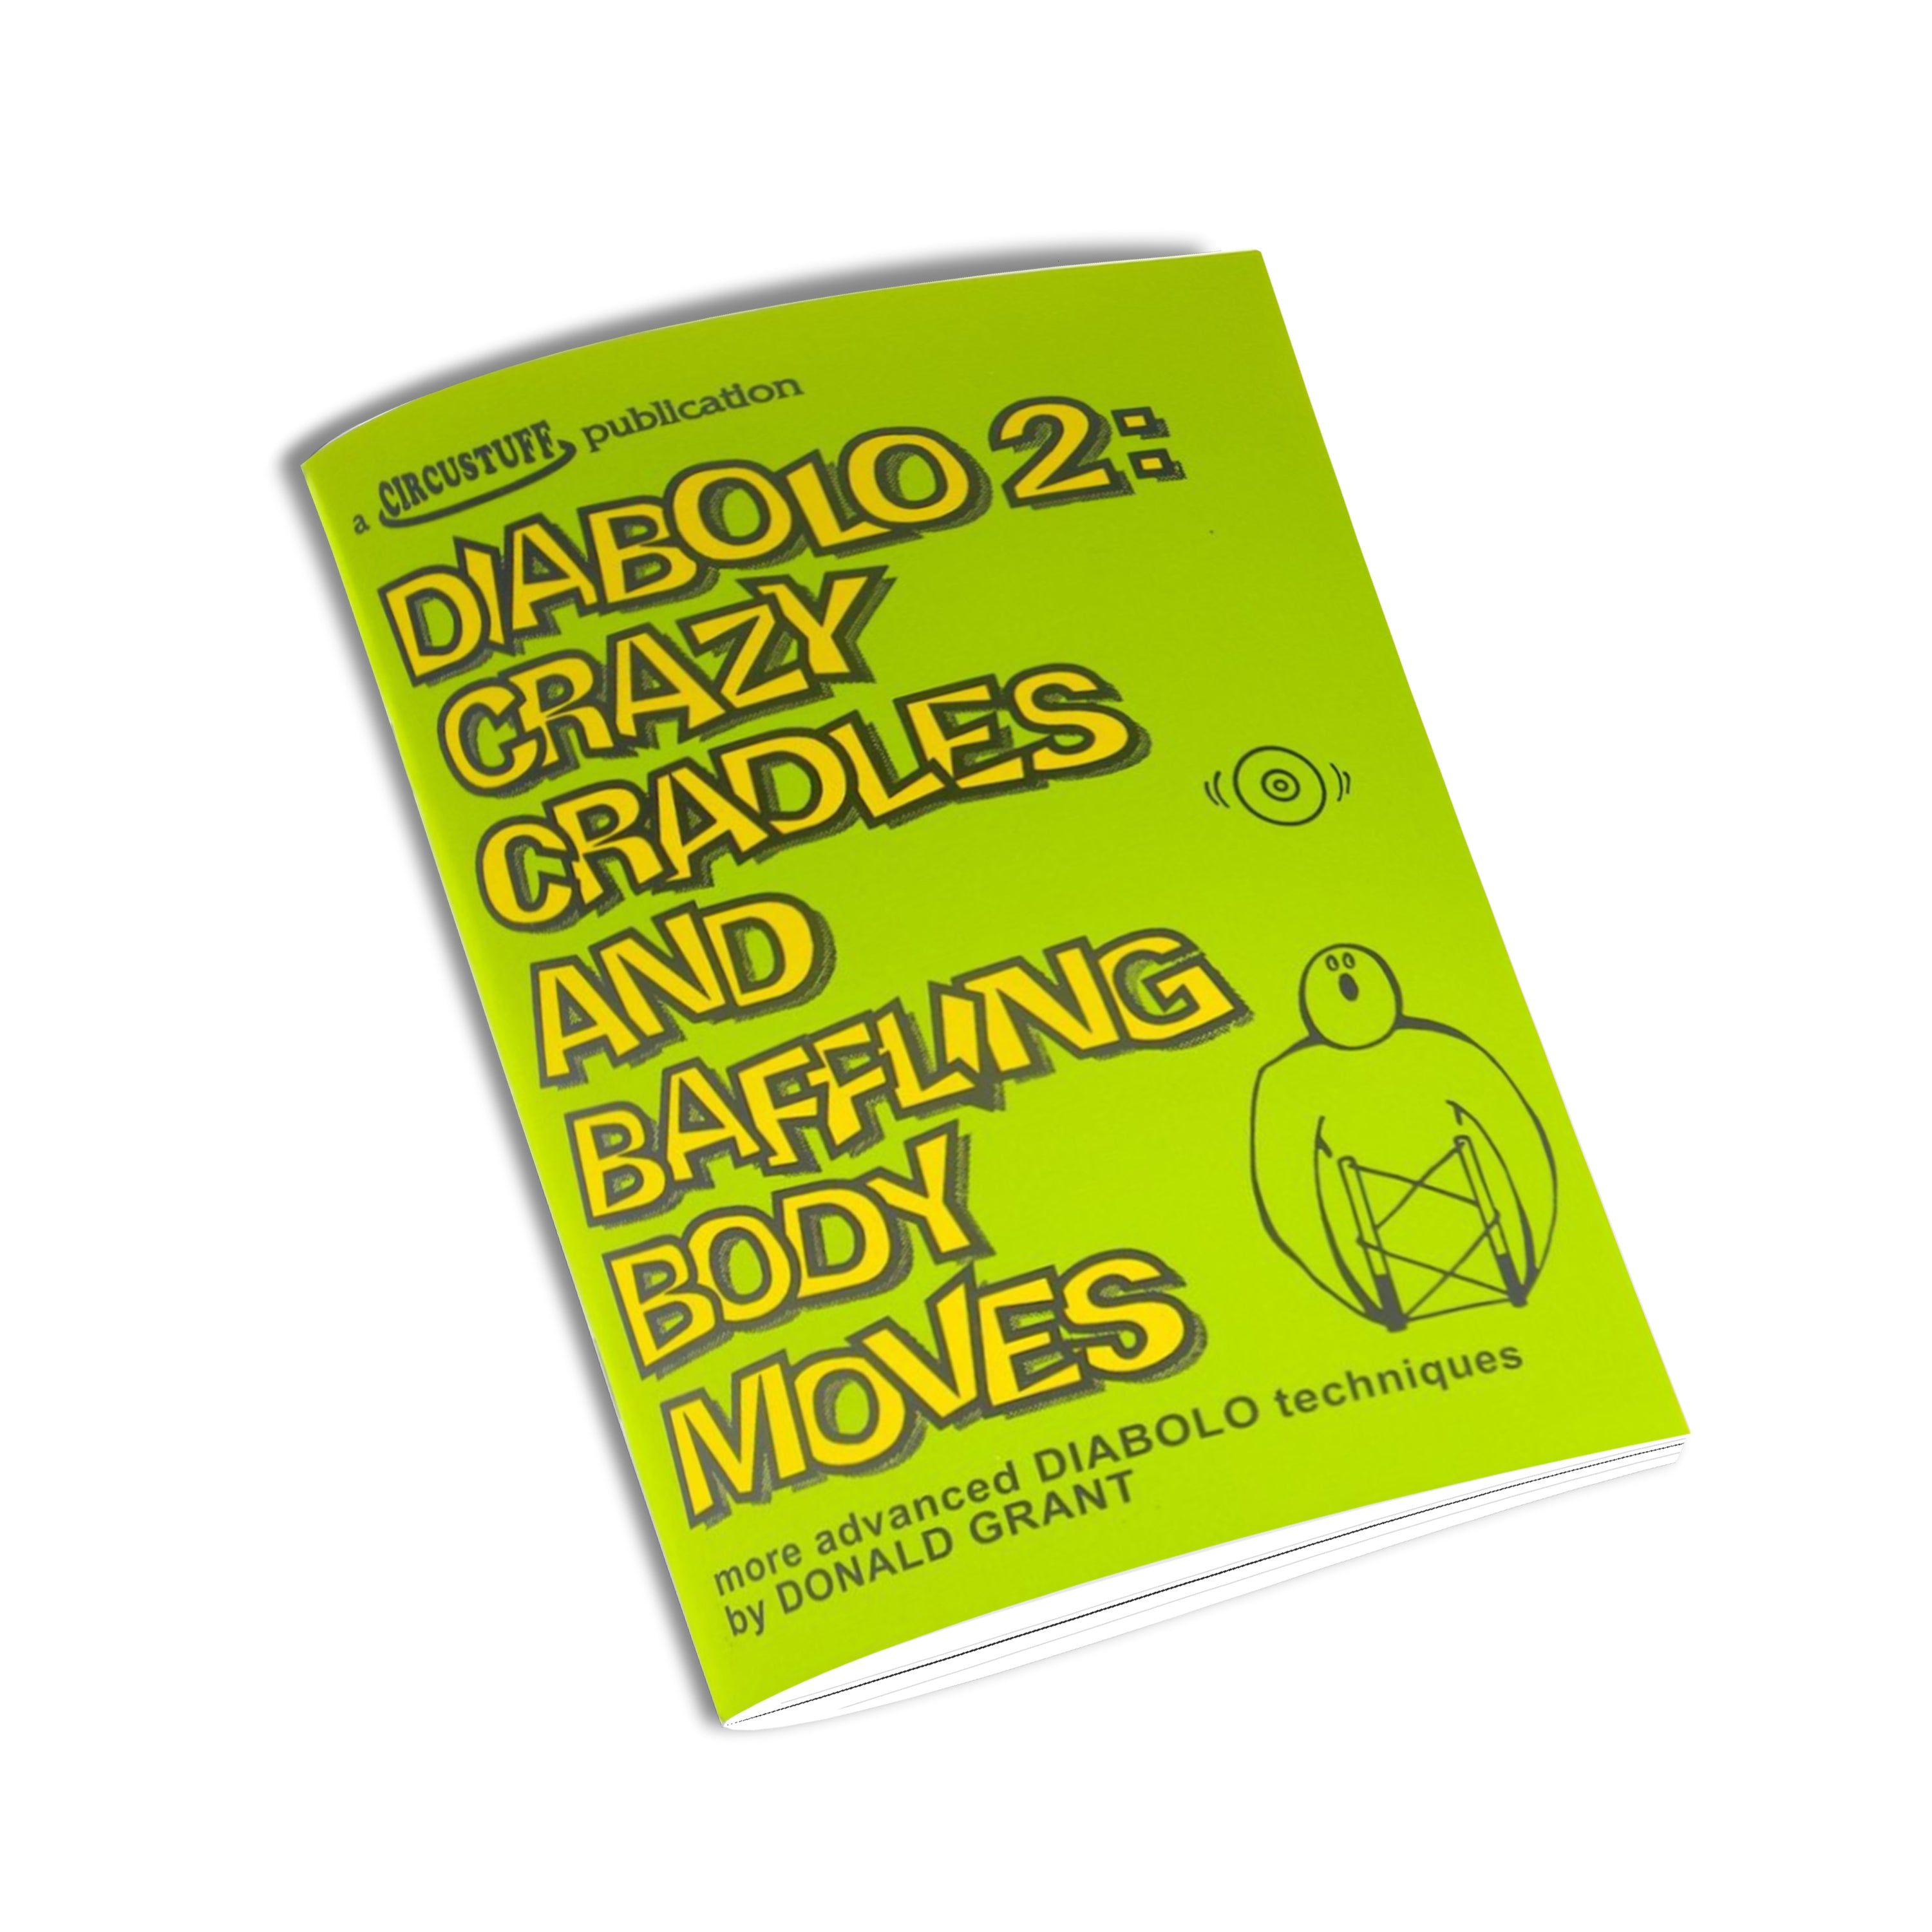 Diabolo 2, Crazy Cradles and Baffling Body Moves (Diabolo Book)